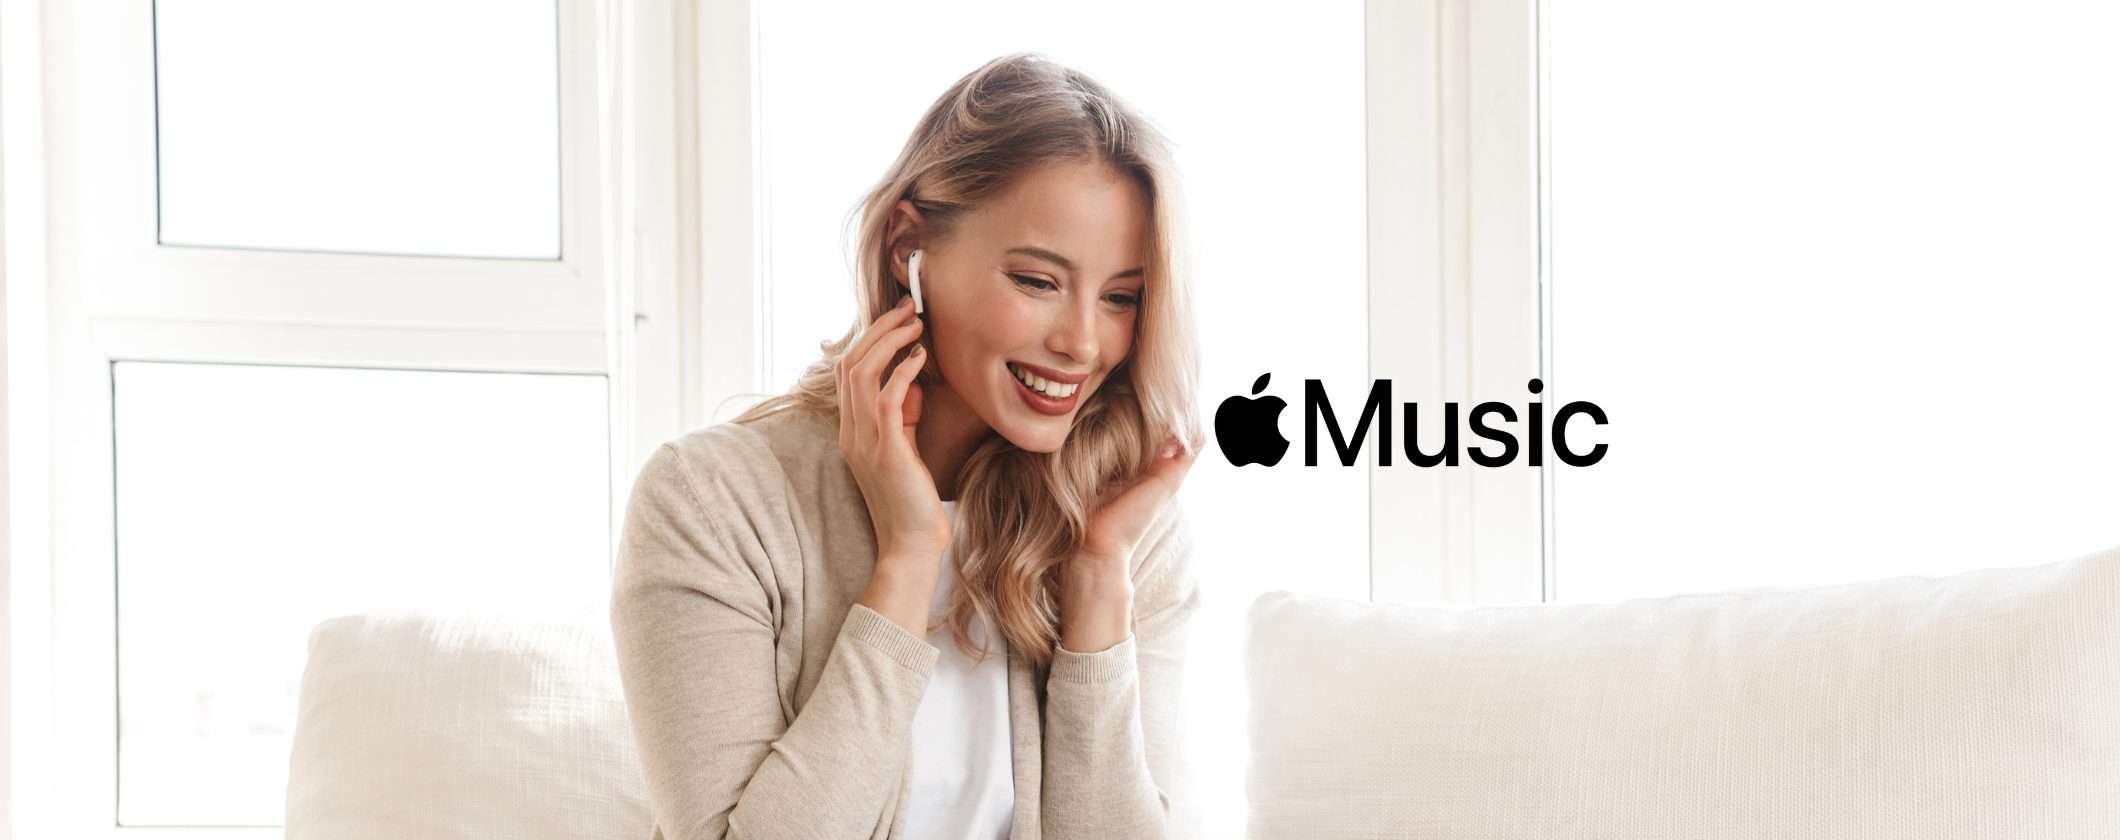 Musica premium GRATIS per 6 mesi con Apple Music